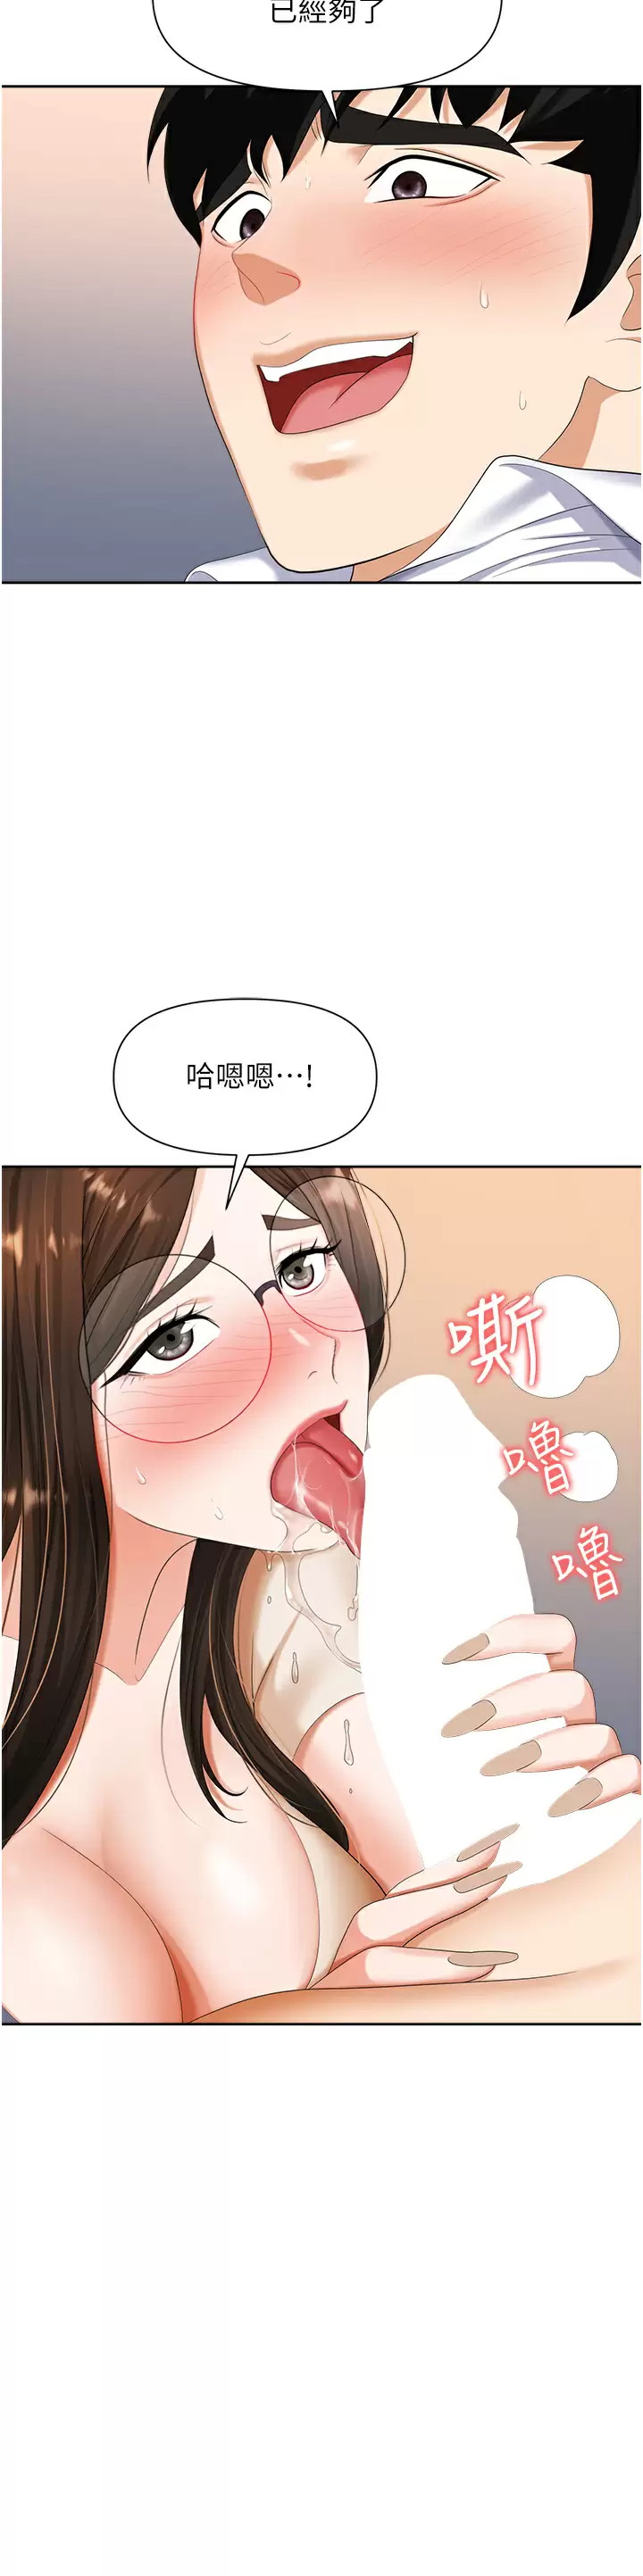 韩国污漫画 職場陷阱 第9话 脱下眼镜再做爱吧 13